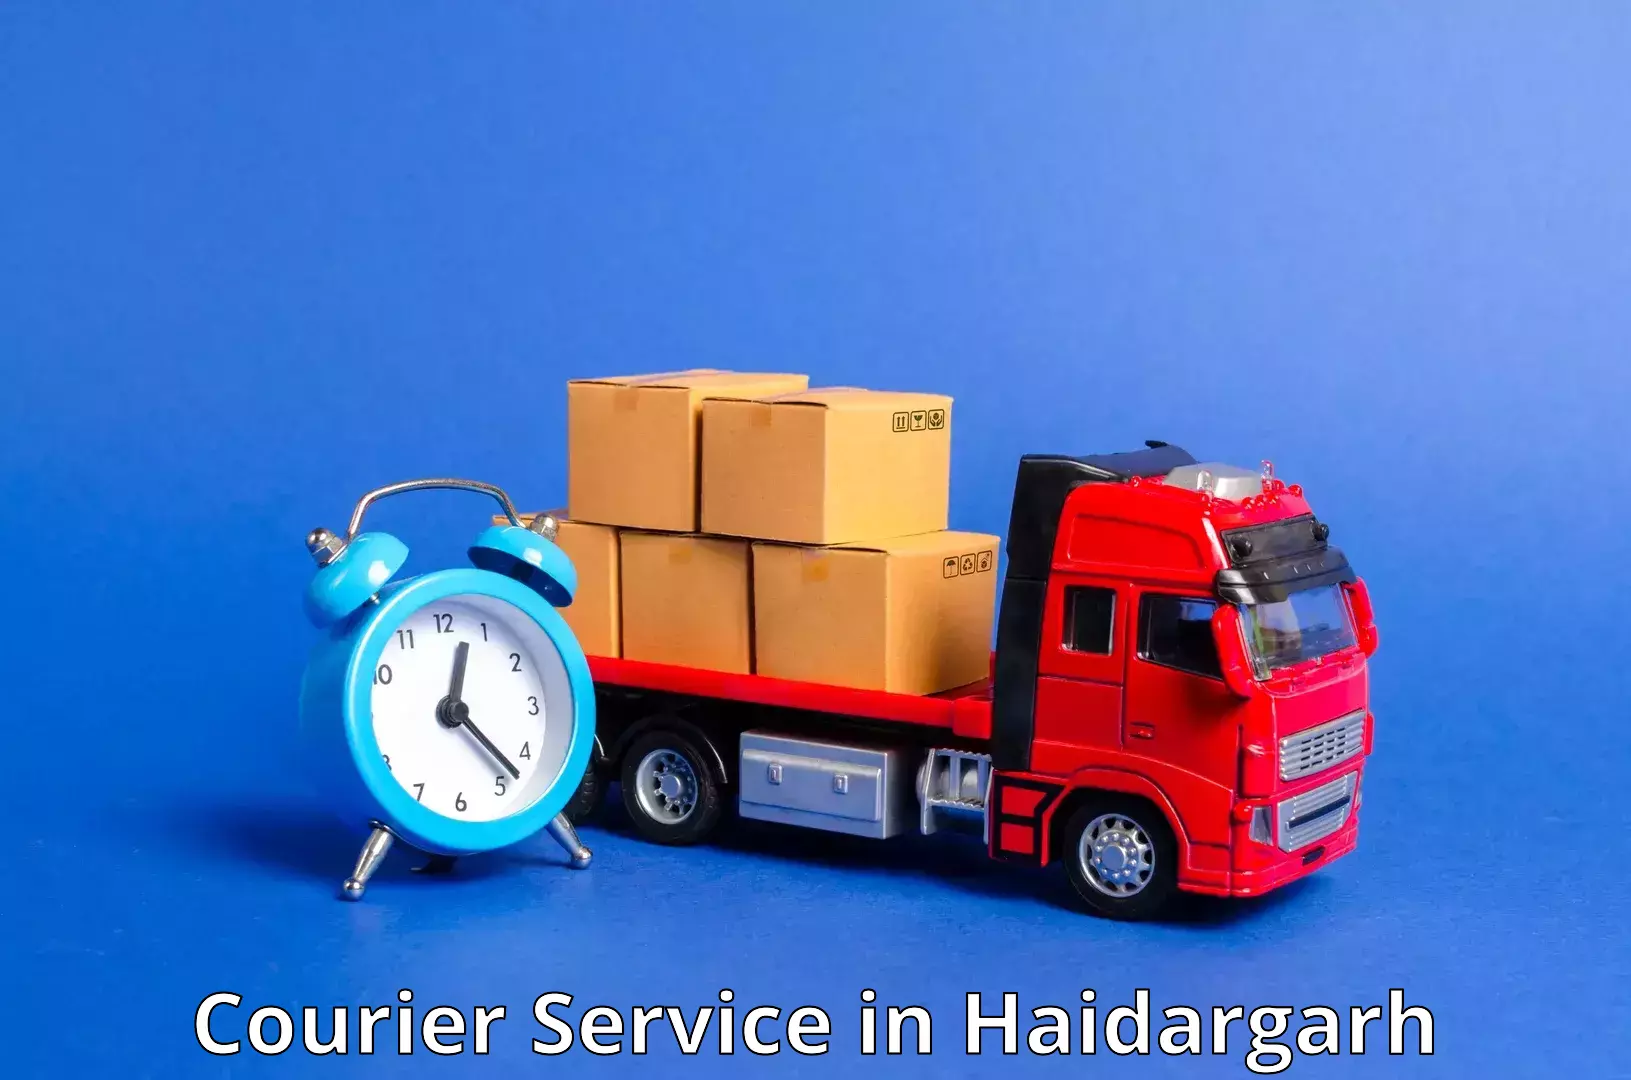 Multi-carrier shipping in Haidargarh